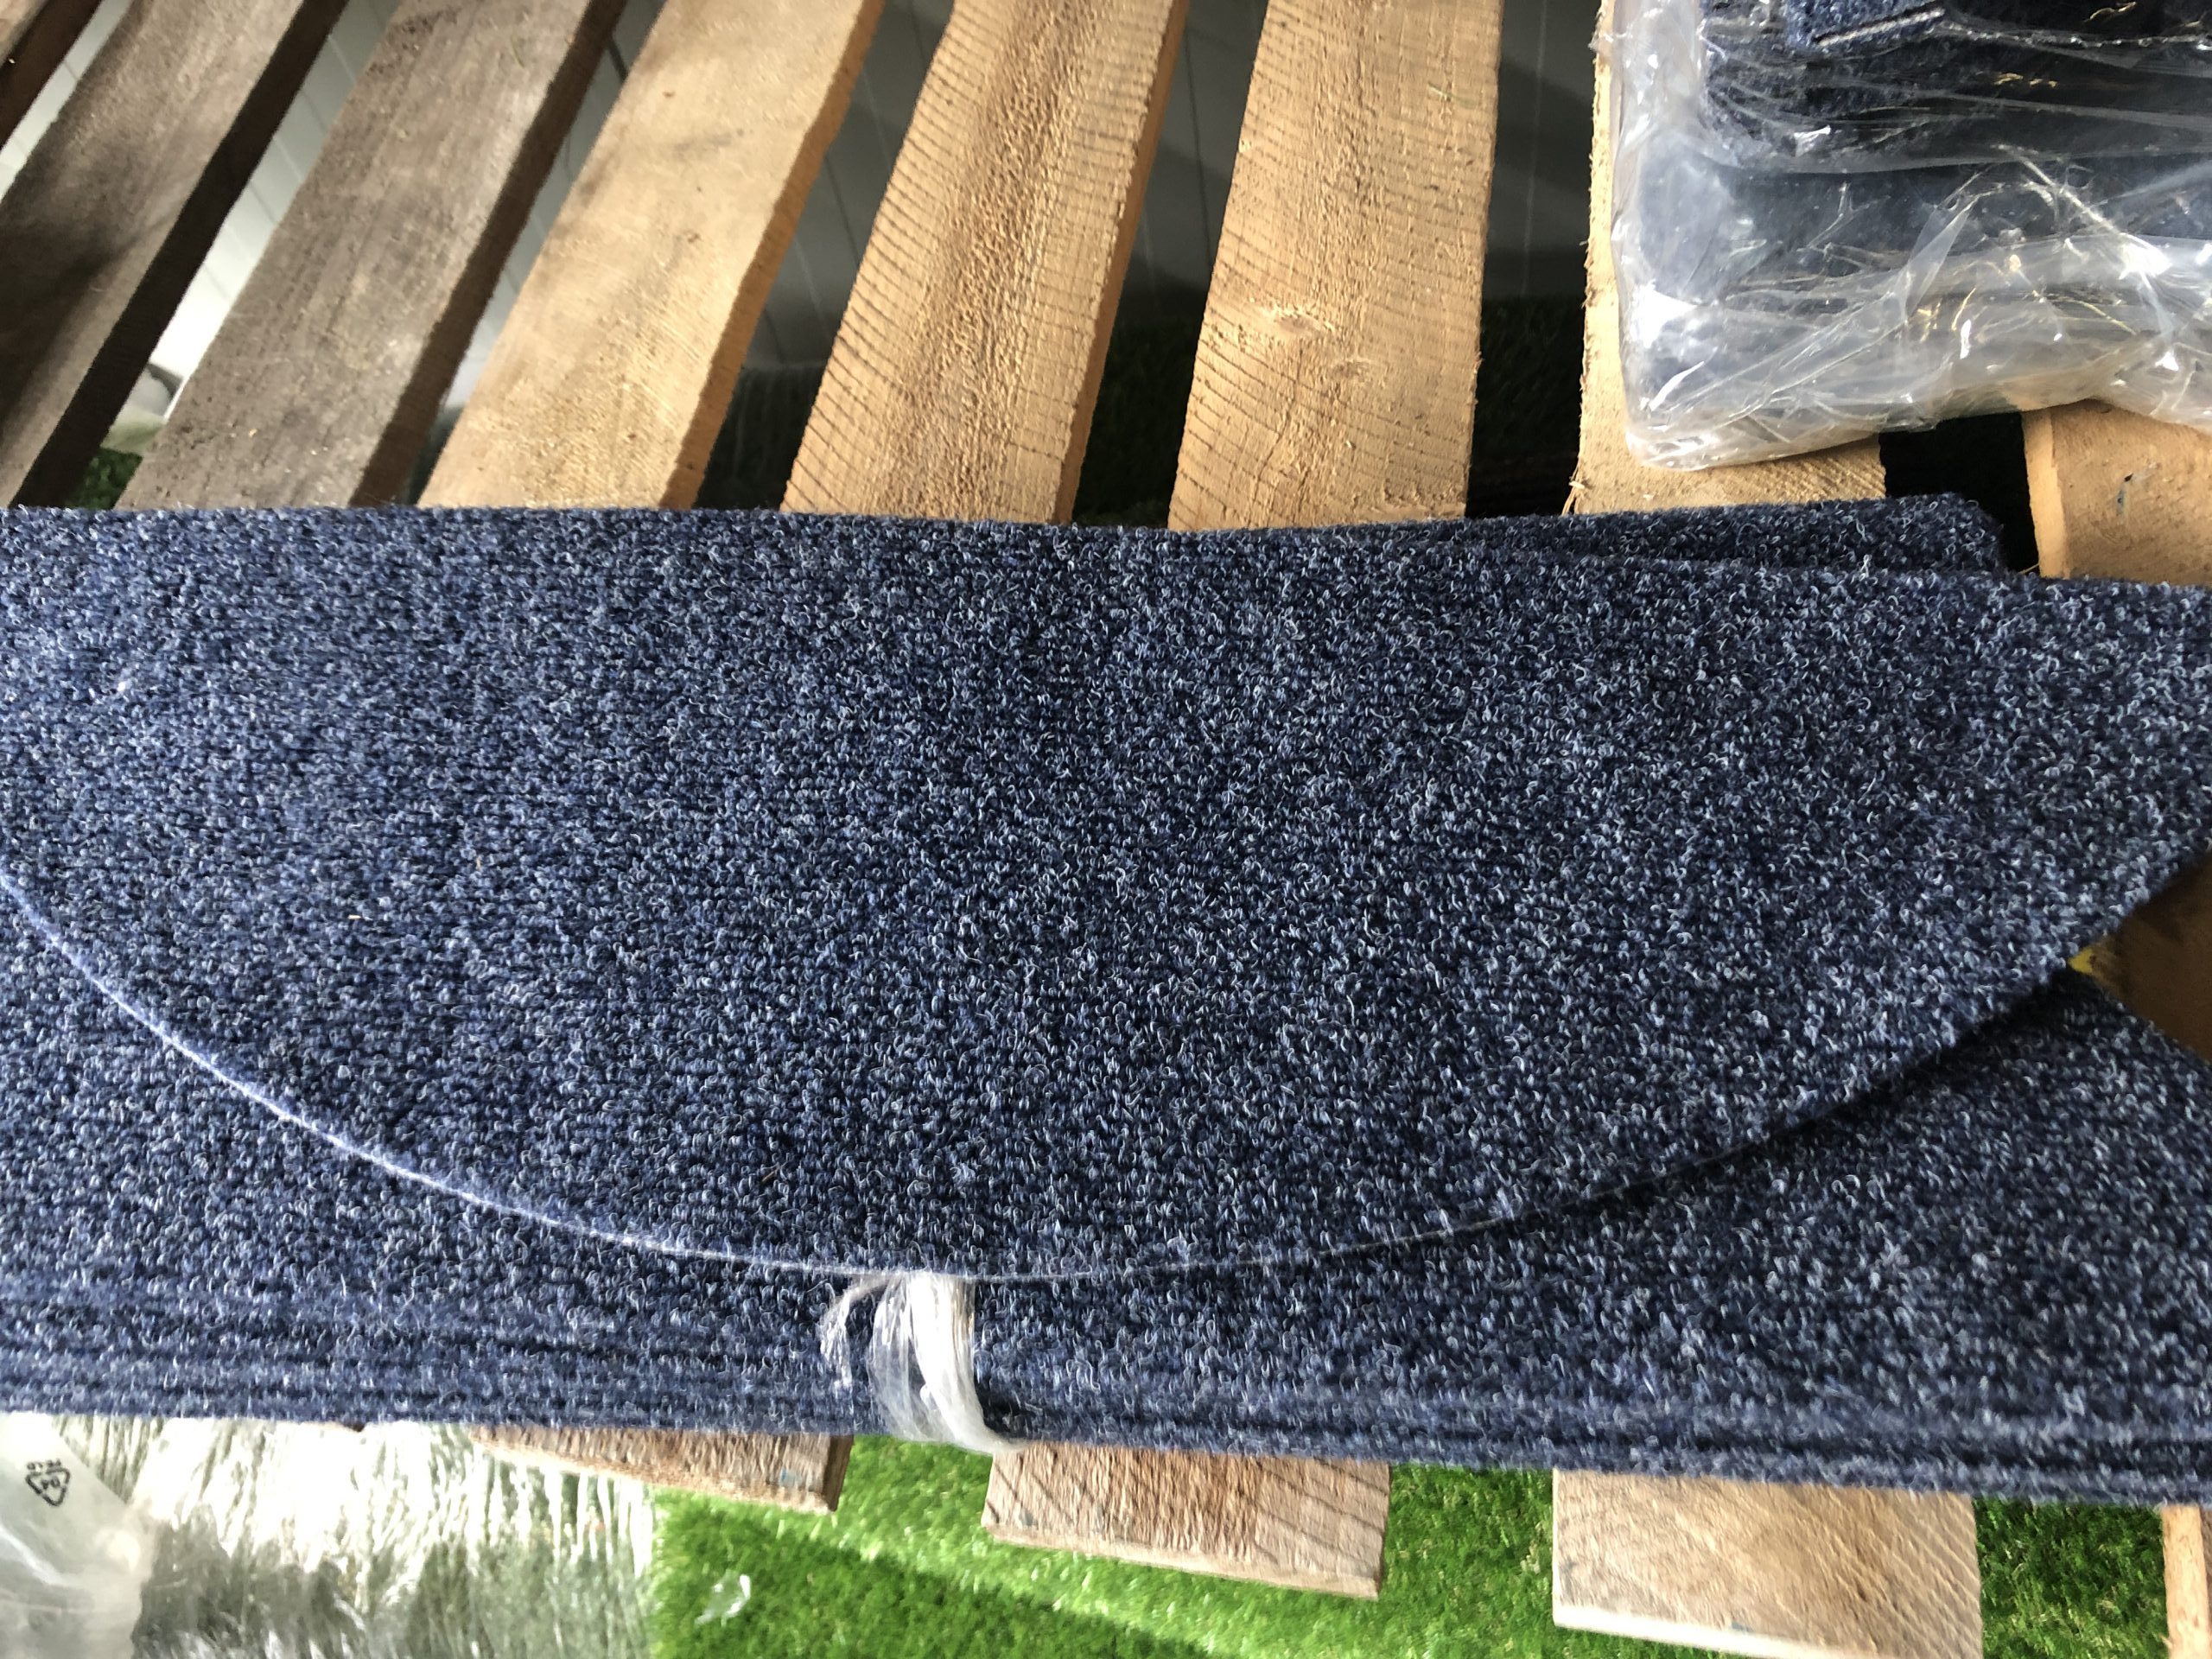 Spektakel Horen van oogsten v)Trapmatten 15 stuks kleur Blauw € 2 p/st – Langenbach tapijt | De  goedkoopste leverancier van karpetten en vloerkleden. Kuntgras kunst gras  voordelig